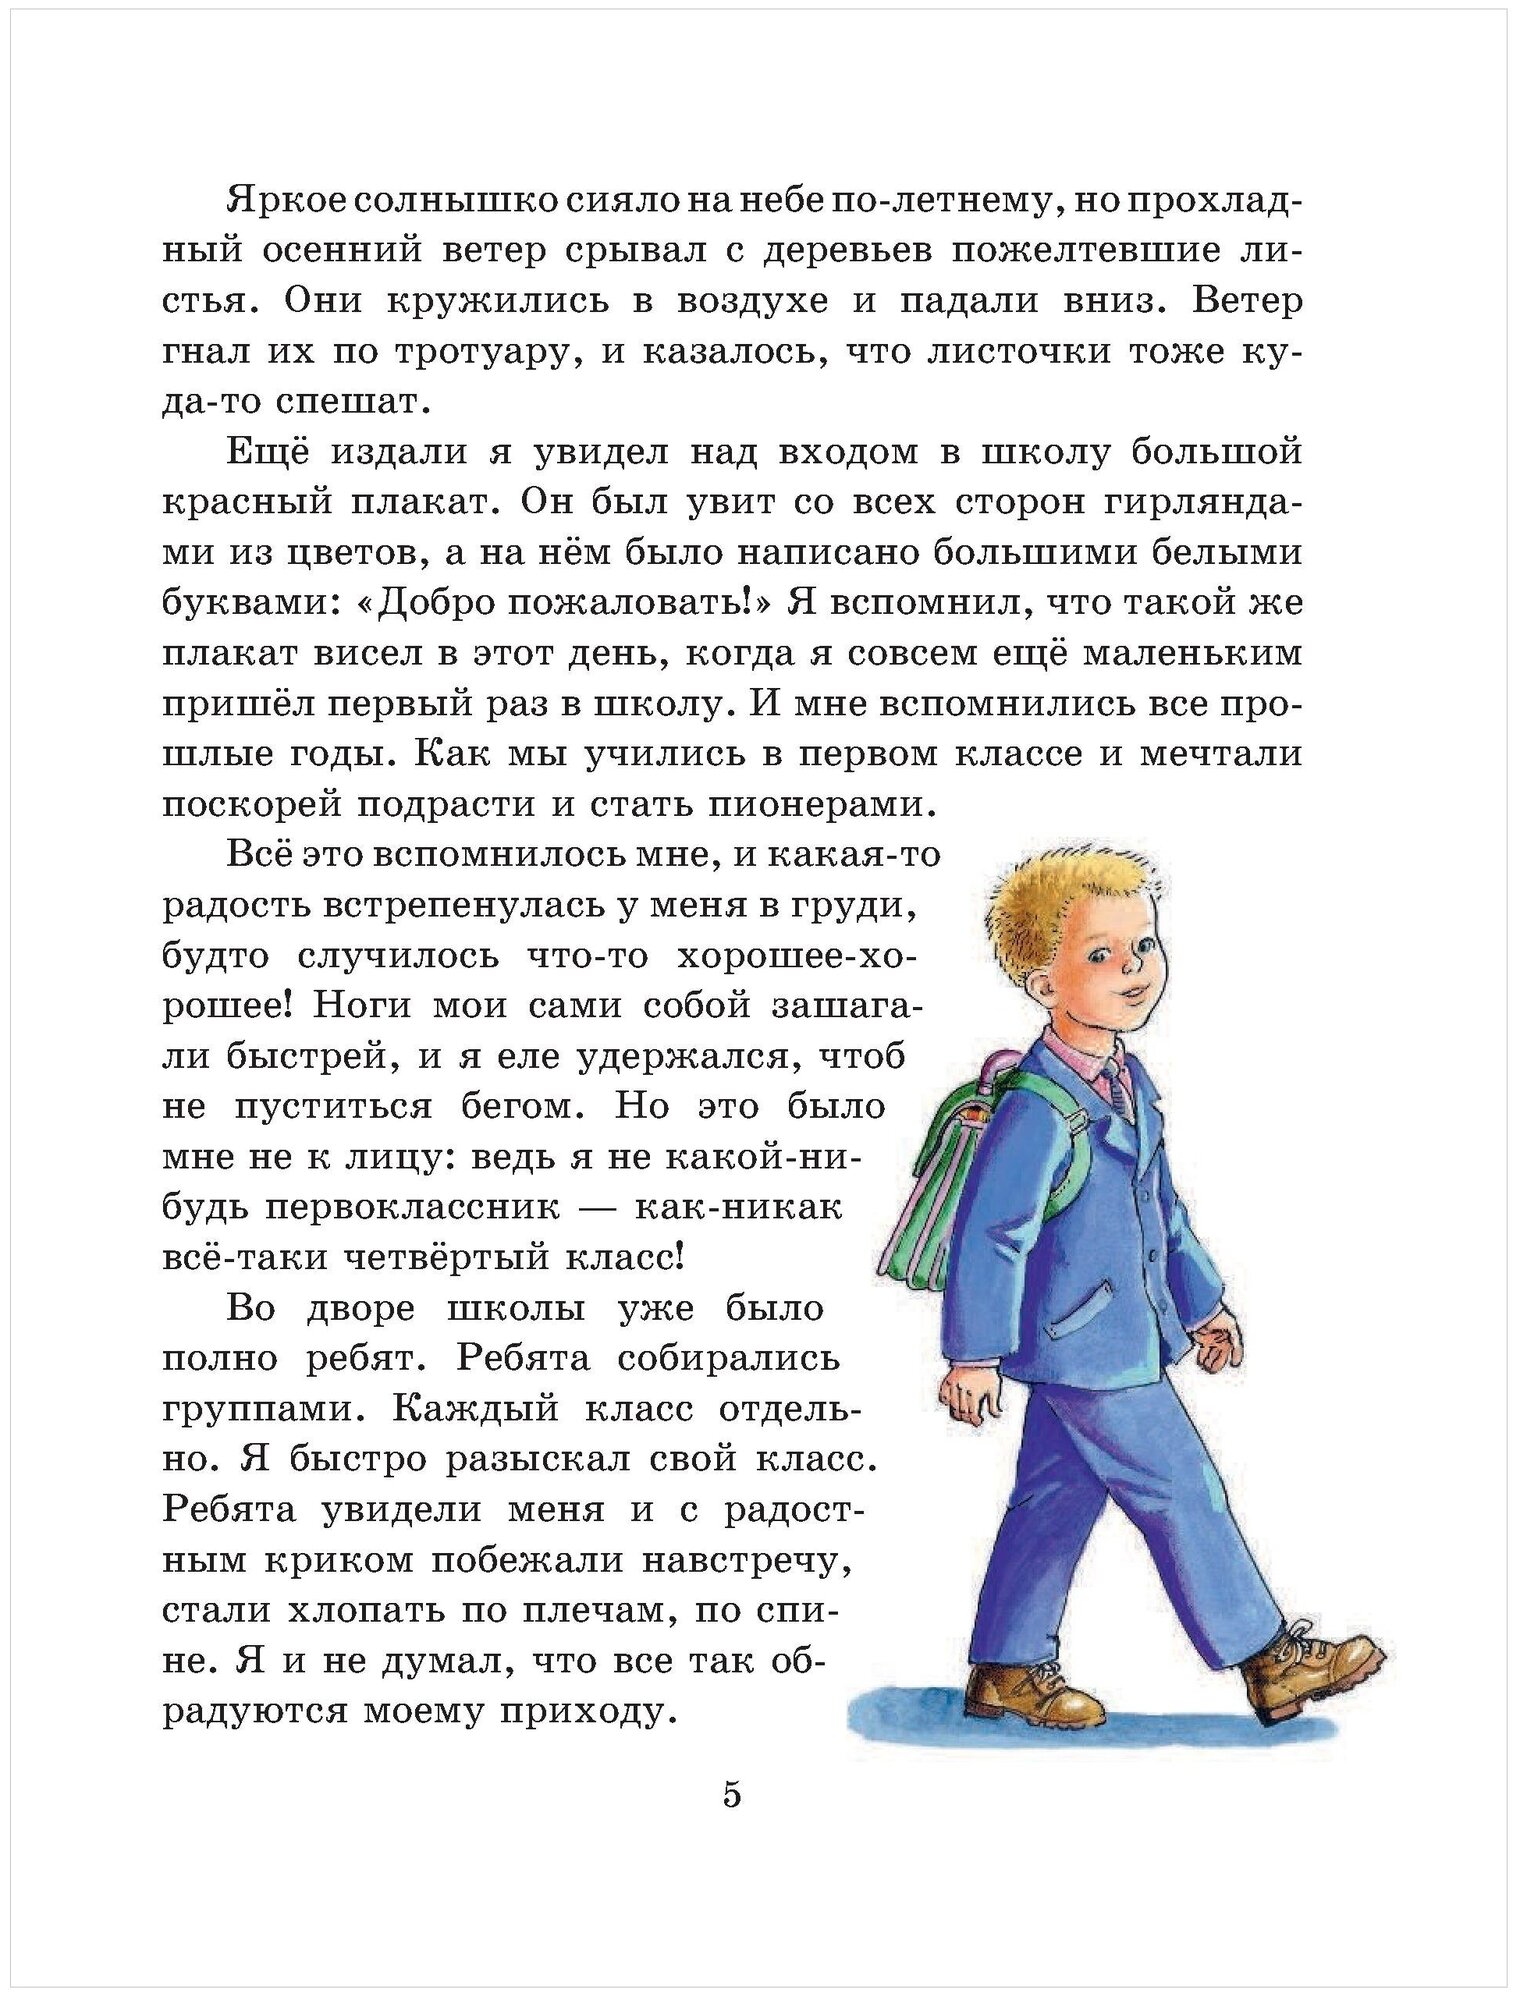 Витя Малеев в школе и дома (Золотые сказки для детей) - фото №5